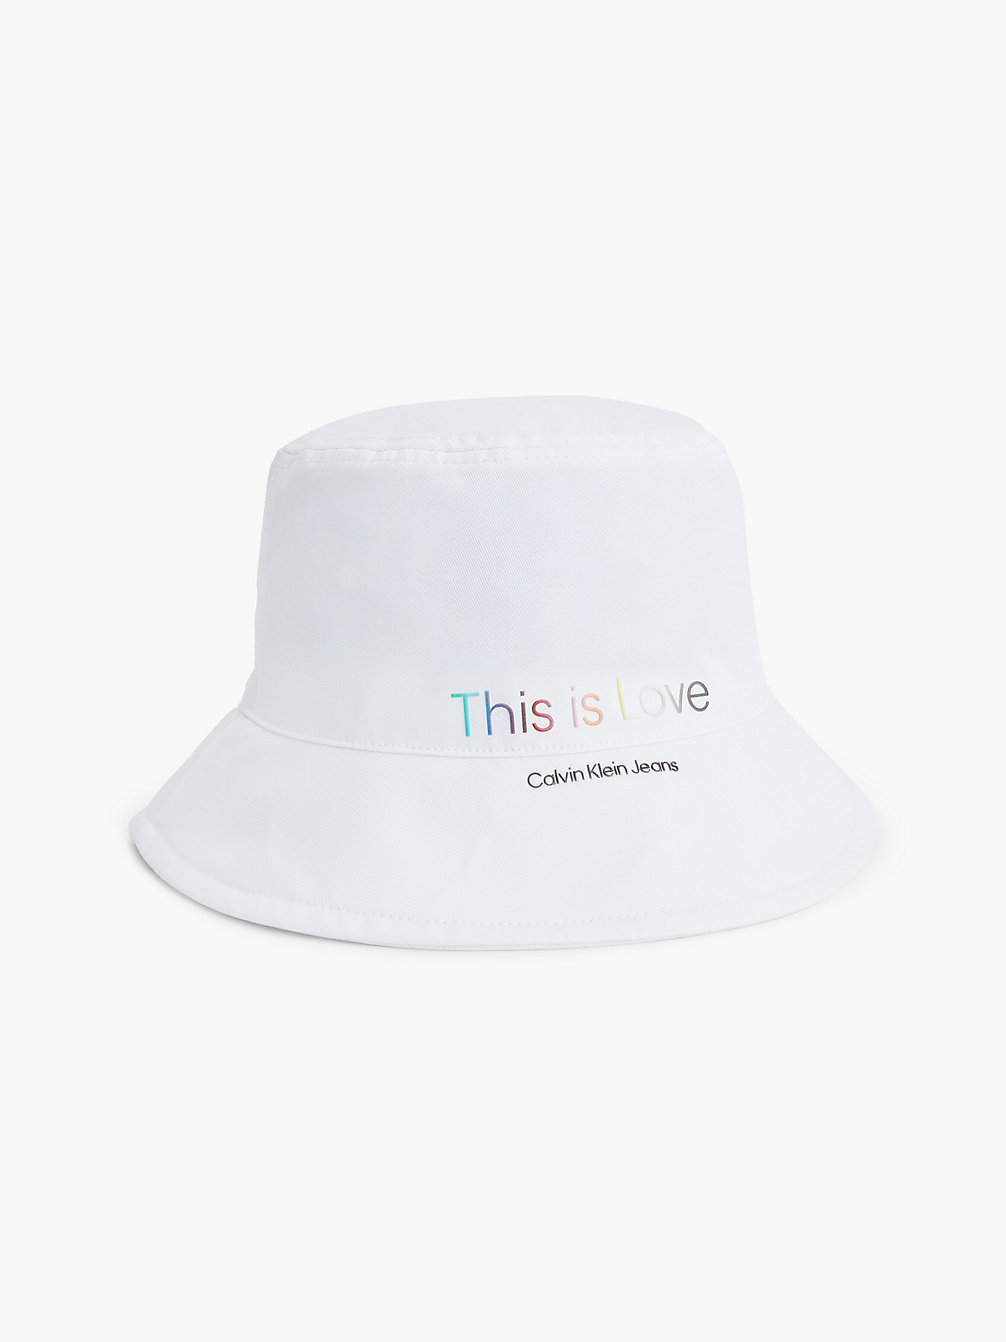 BRIGHT WHITE > Bucket Hat Aus Bio-Baumwolle - Pride > undefined Unisex - Calvin Klein